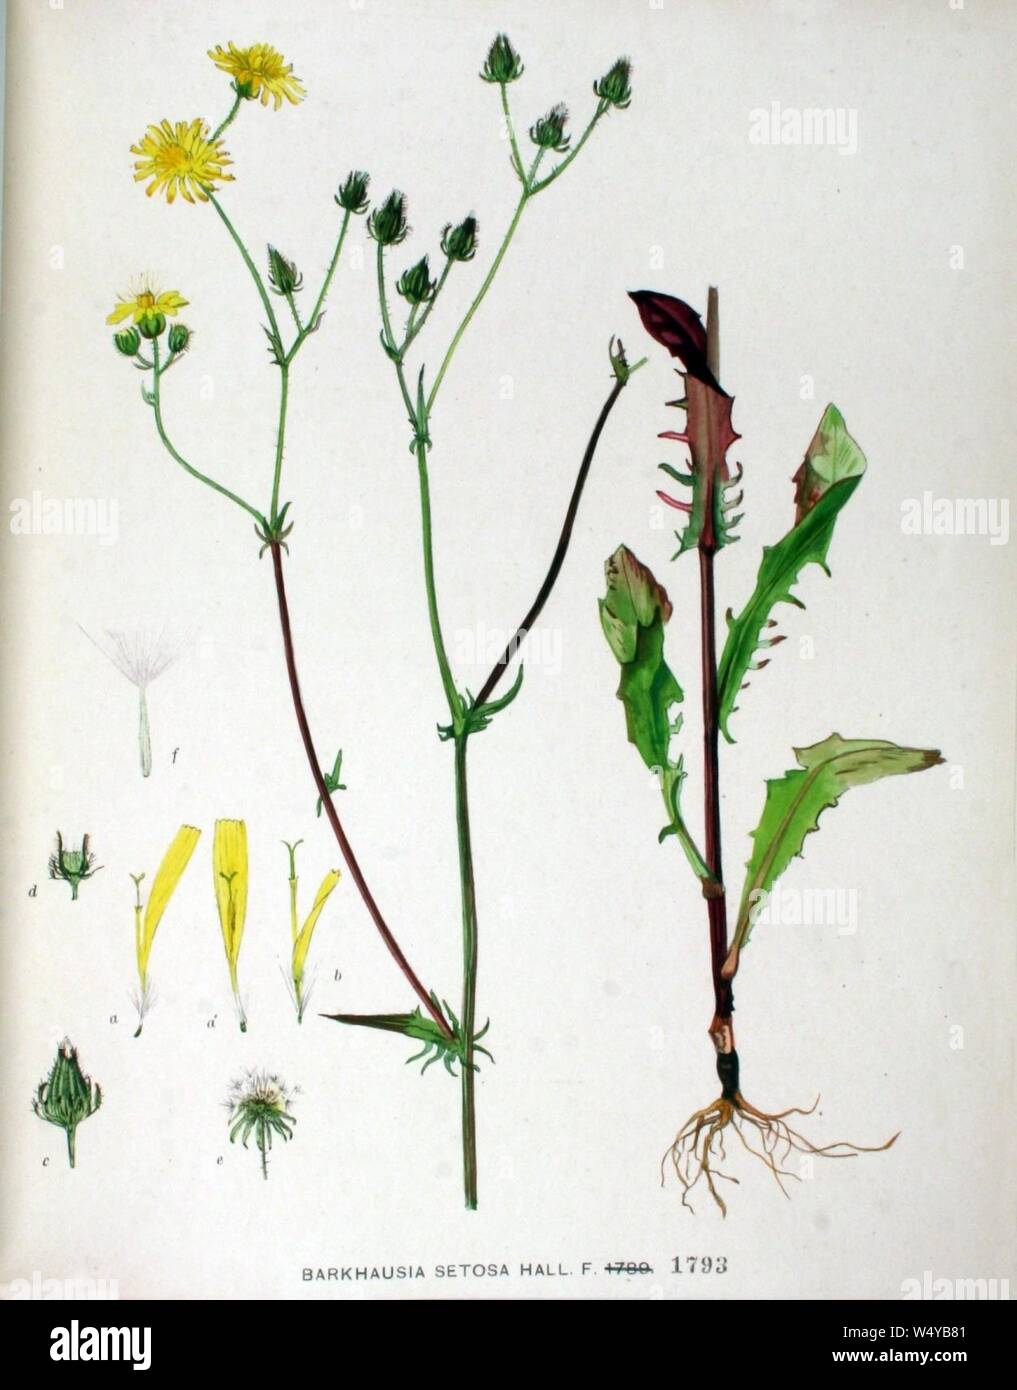 Crepis setosa plant (15). Stock Photo